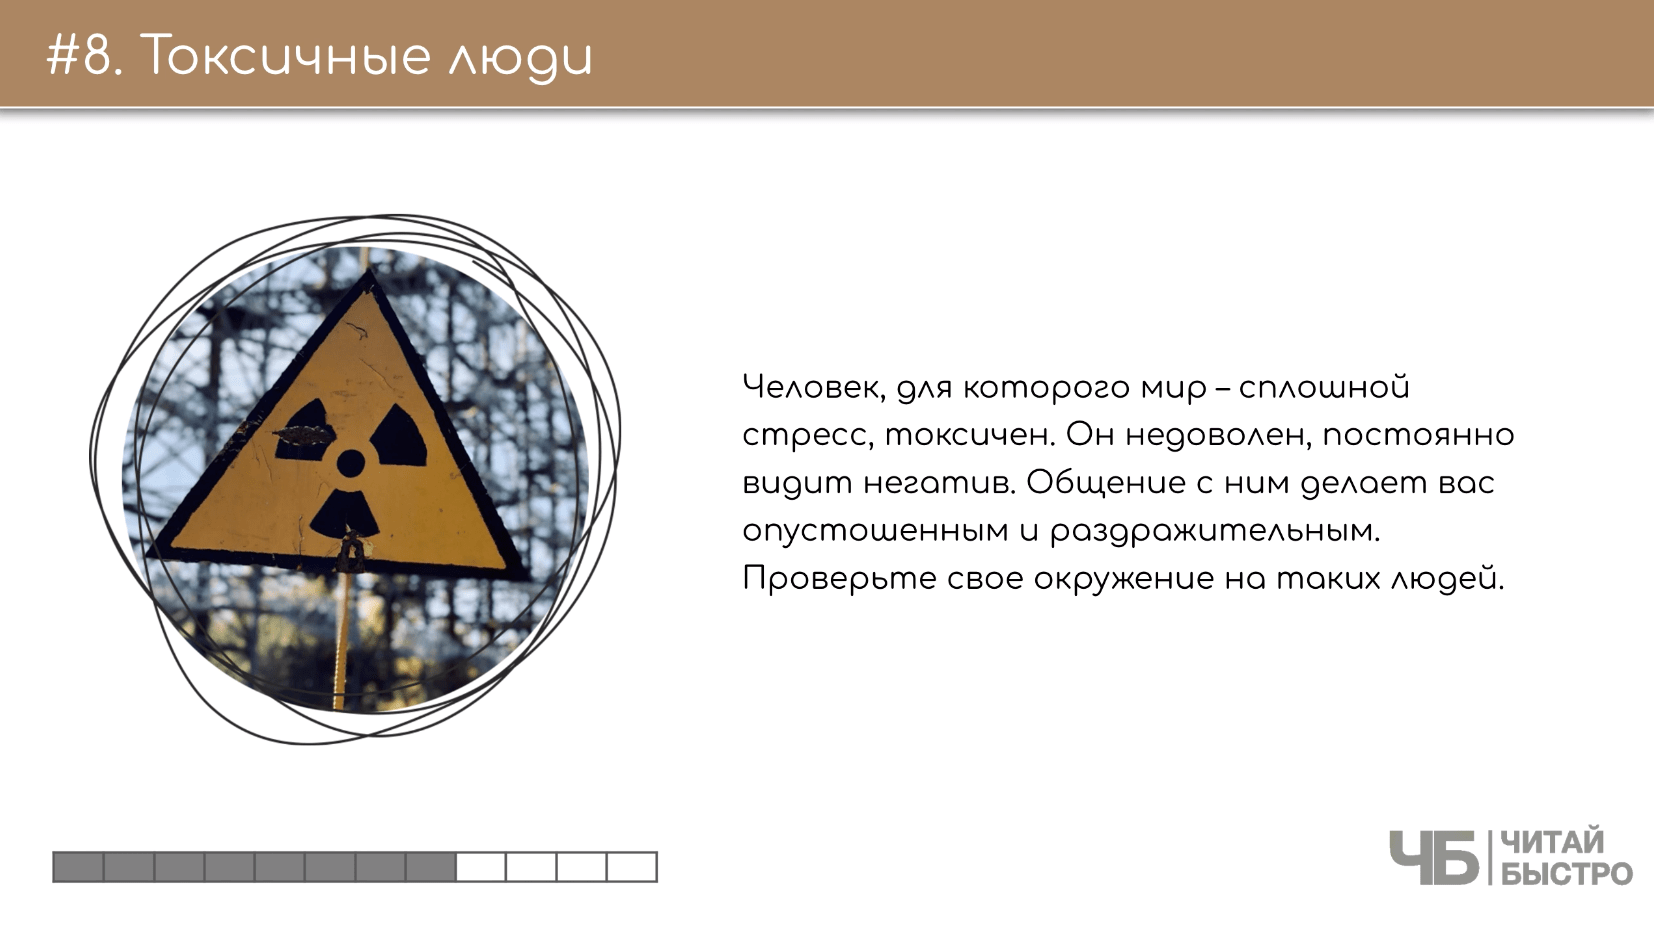 На этом слайде изображен тезис о токсичных людях и иллюстрация знака токсических веществ.